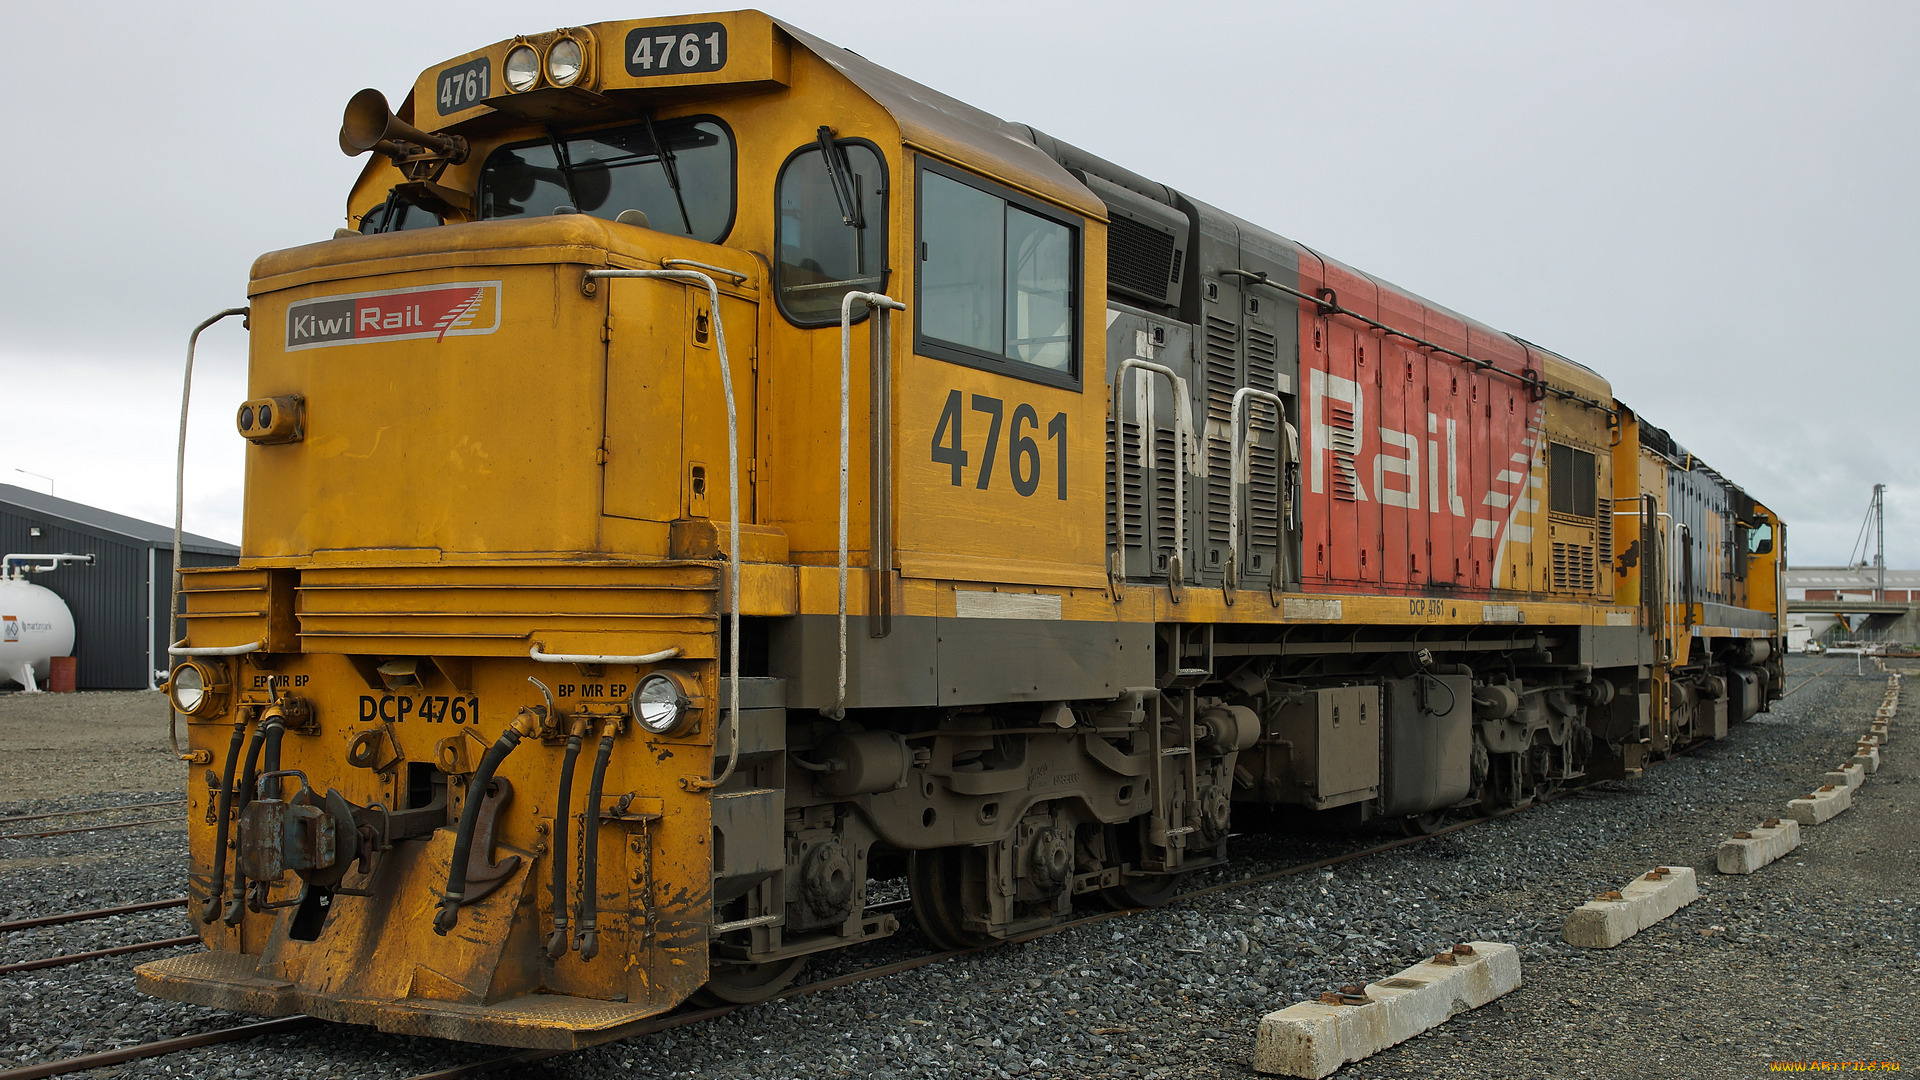 kiwirail, dcp, 4761, locomotive, техника, локомотивы, железная, локомотив, состав, рельсы, дорога